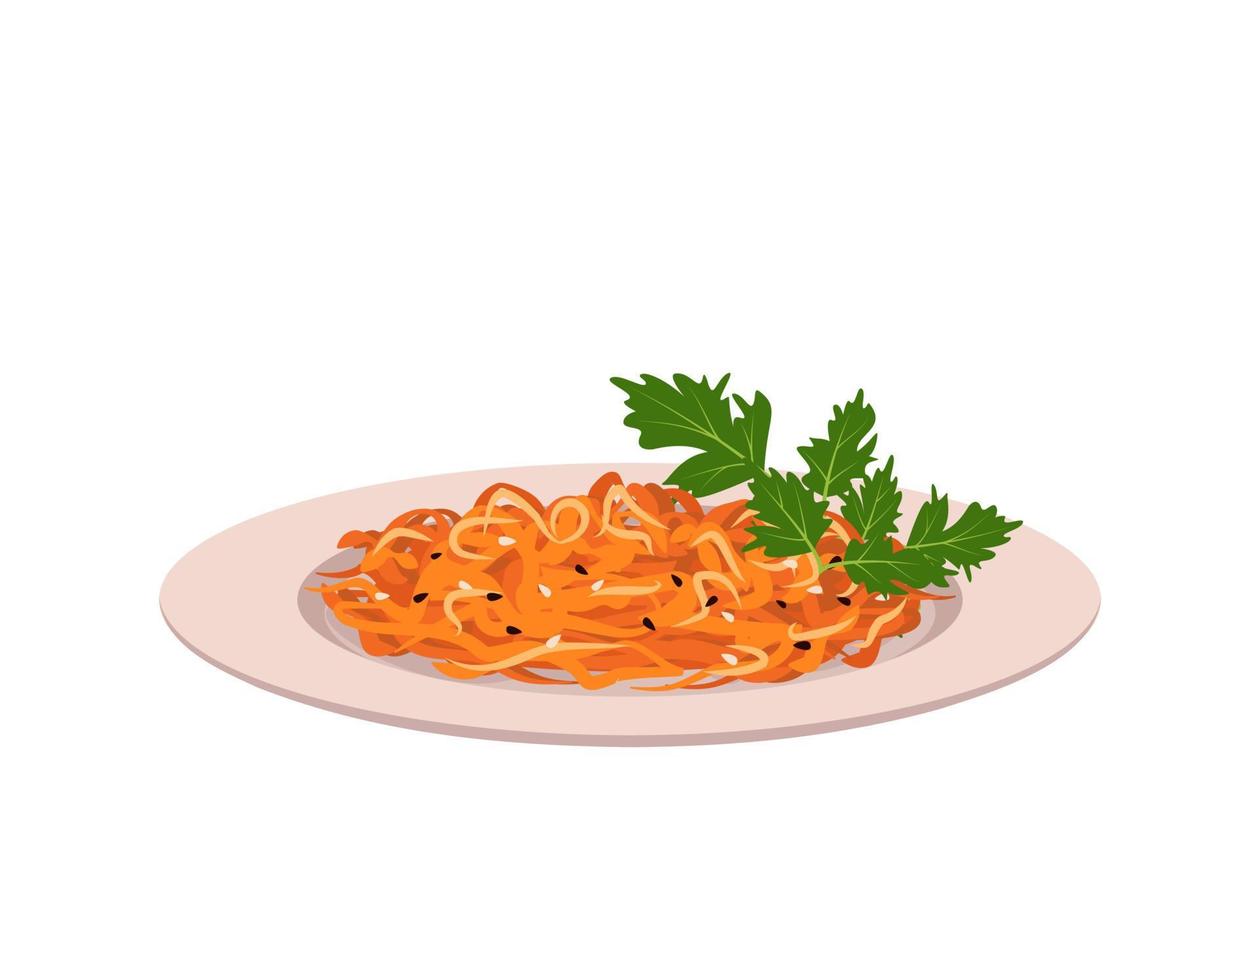 insalata di carote all'arancia grattugiata con semi di sesamo e foglie di prezzemolo sul piatto. cibo delizioso e sano con vitamine, piatto coreano. illustrazione piatta vettoriale